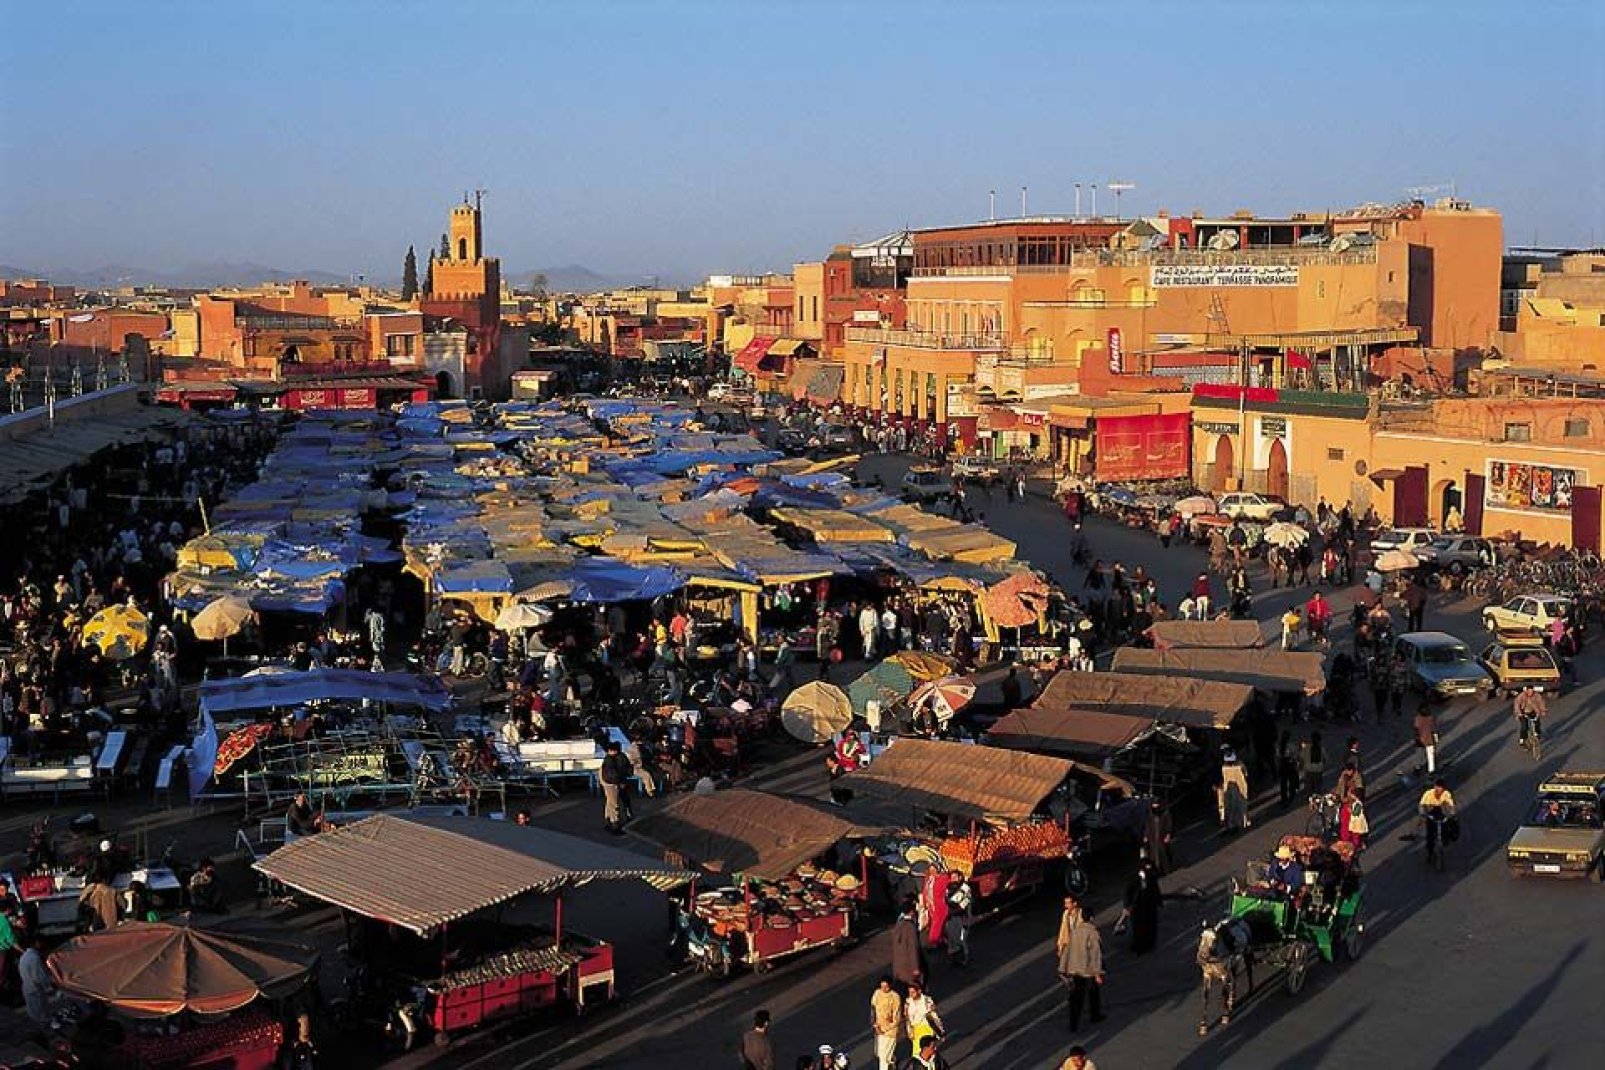 La plus festive et la plus branchée des villes marocaines, Marrakech n'en a pas pour autant perdu son charme et authenticité.